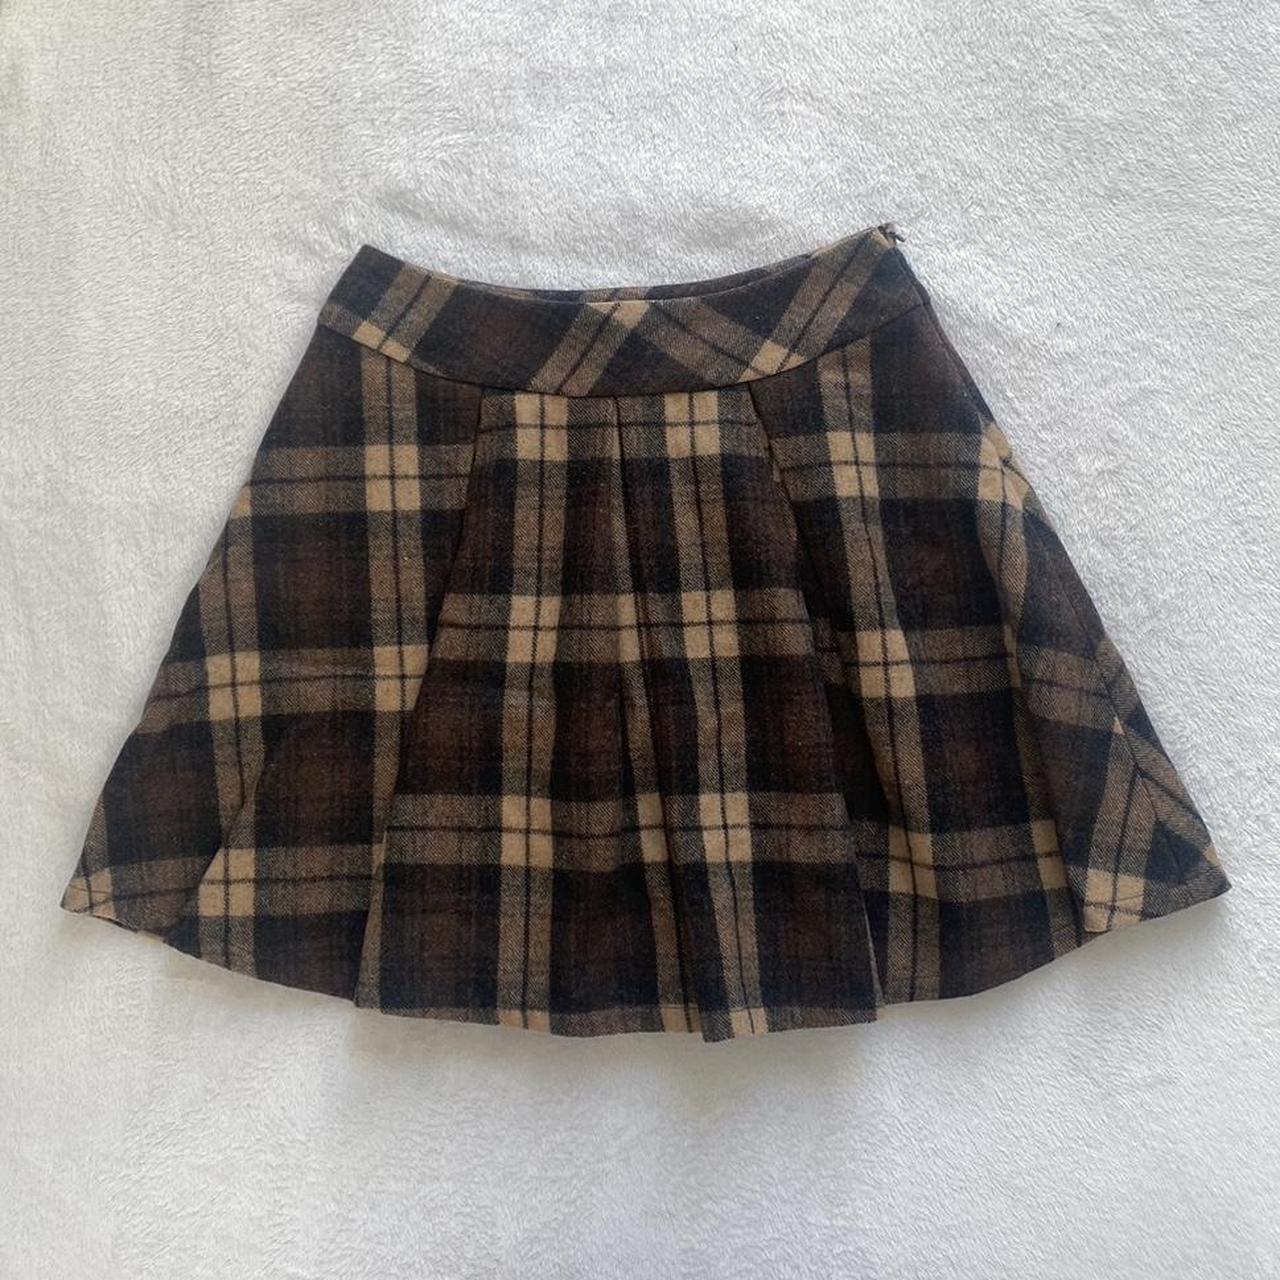 dark academia japanese plaid pleated skirt, tartan... - Depop